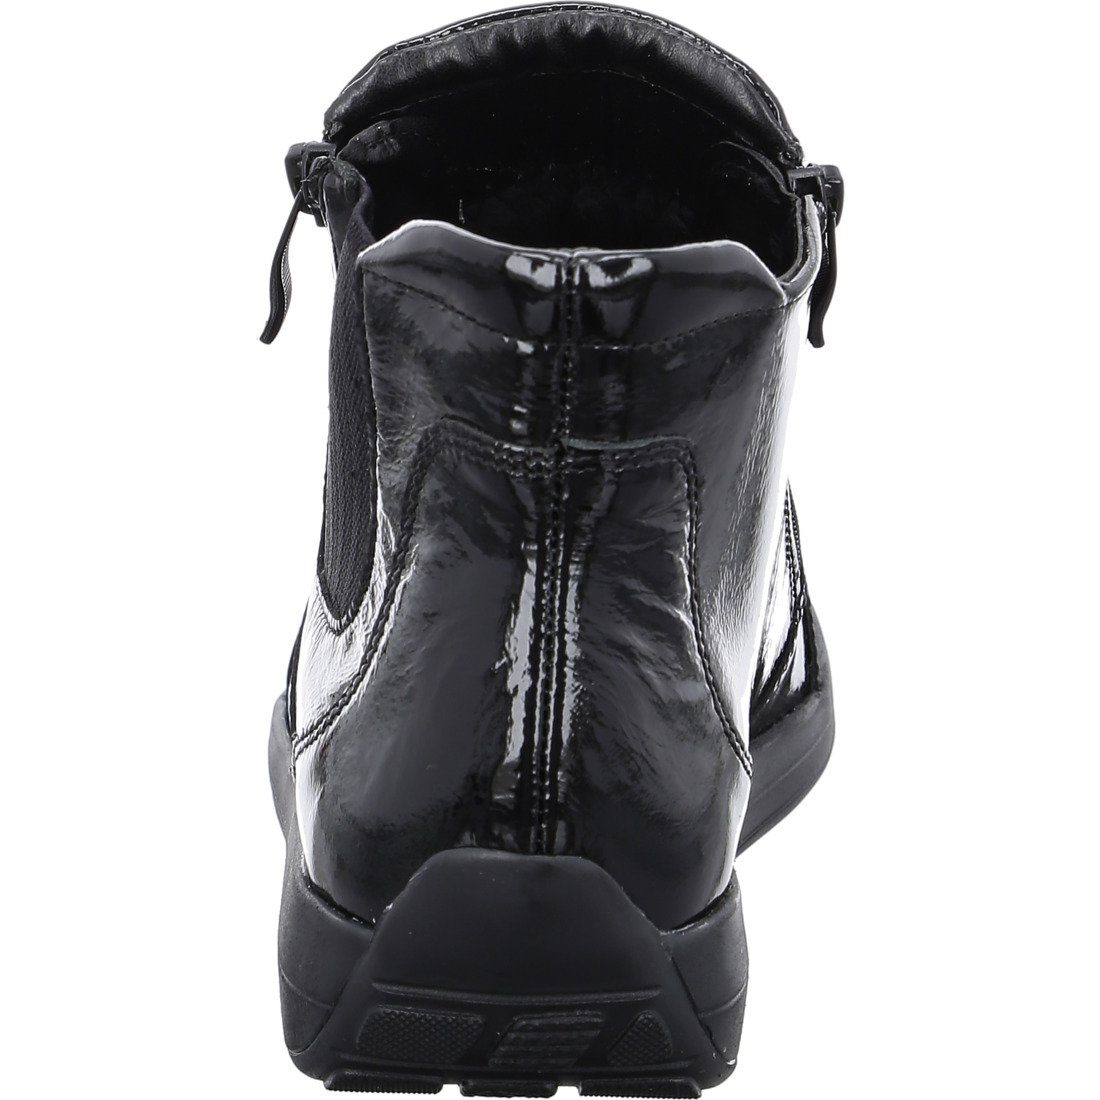 Ara Stiefelette 043836 Merano Schuhe, schwarz - Stiefelette Lackleder Ara